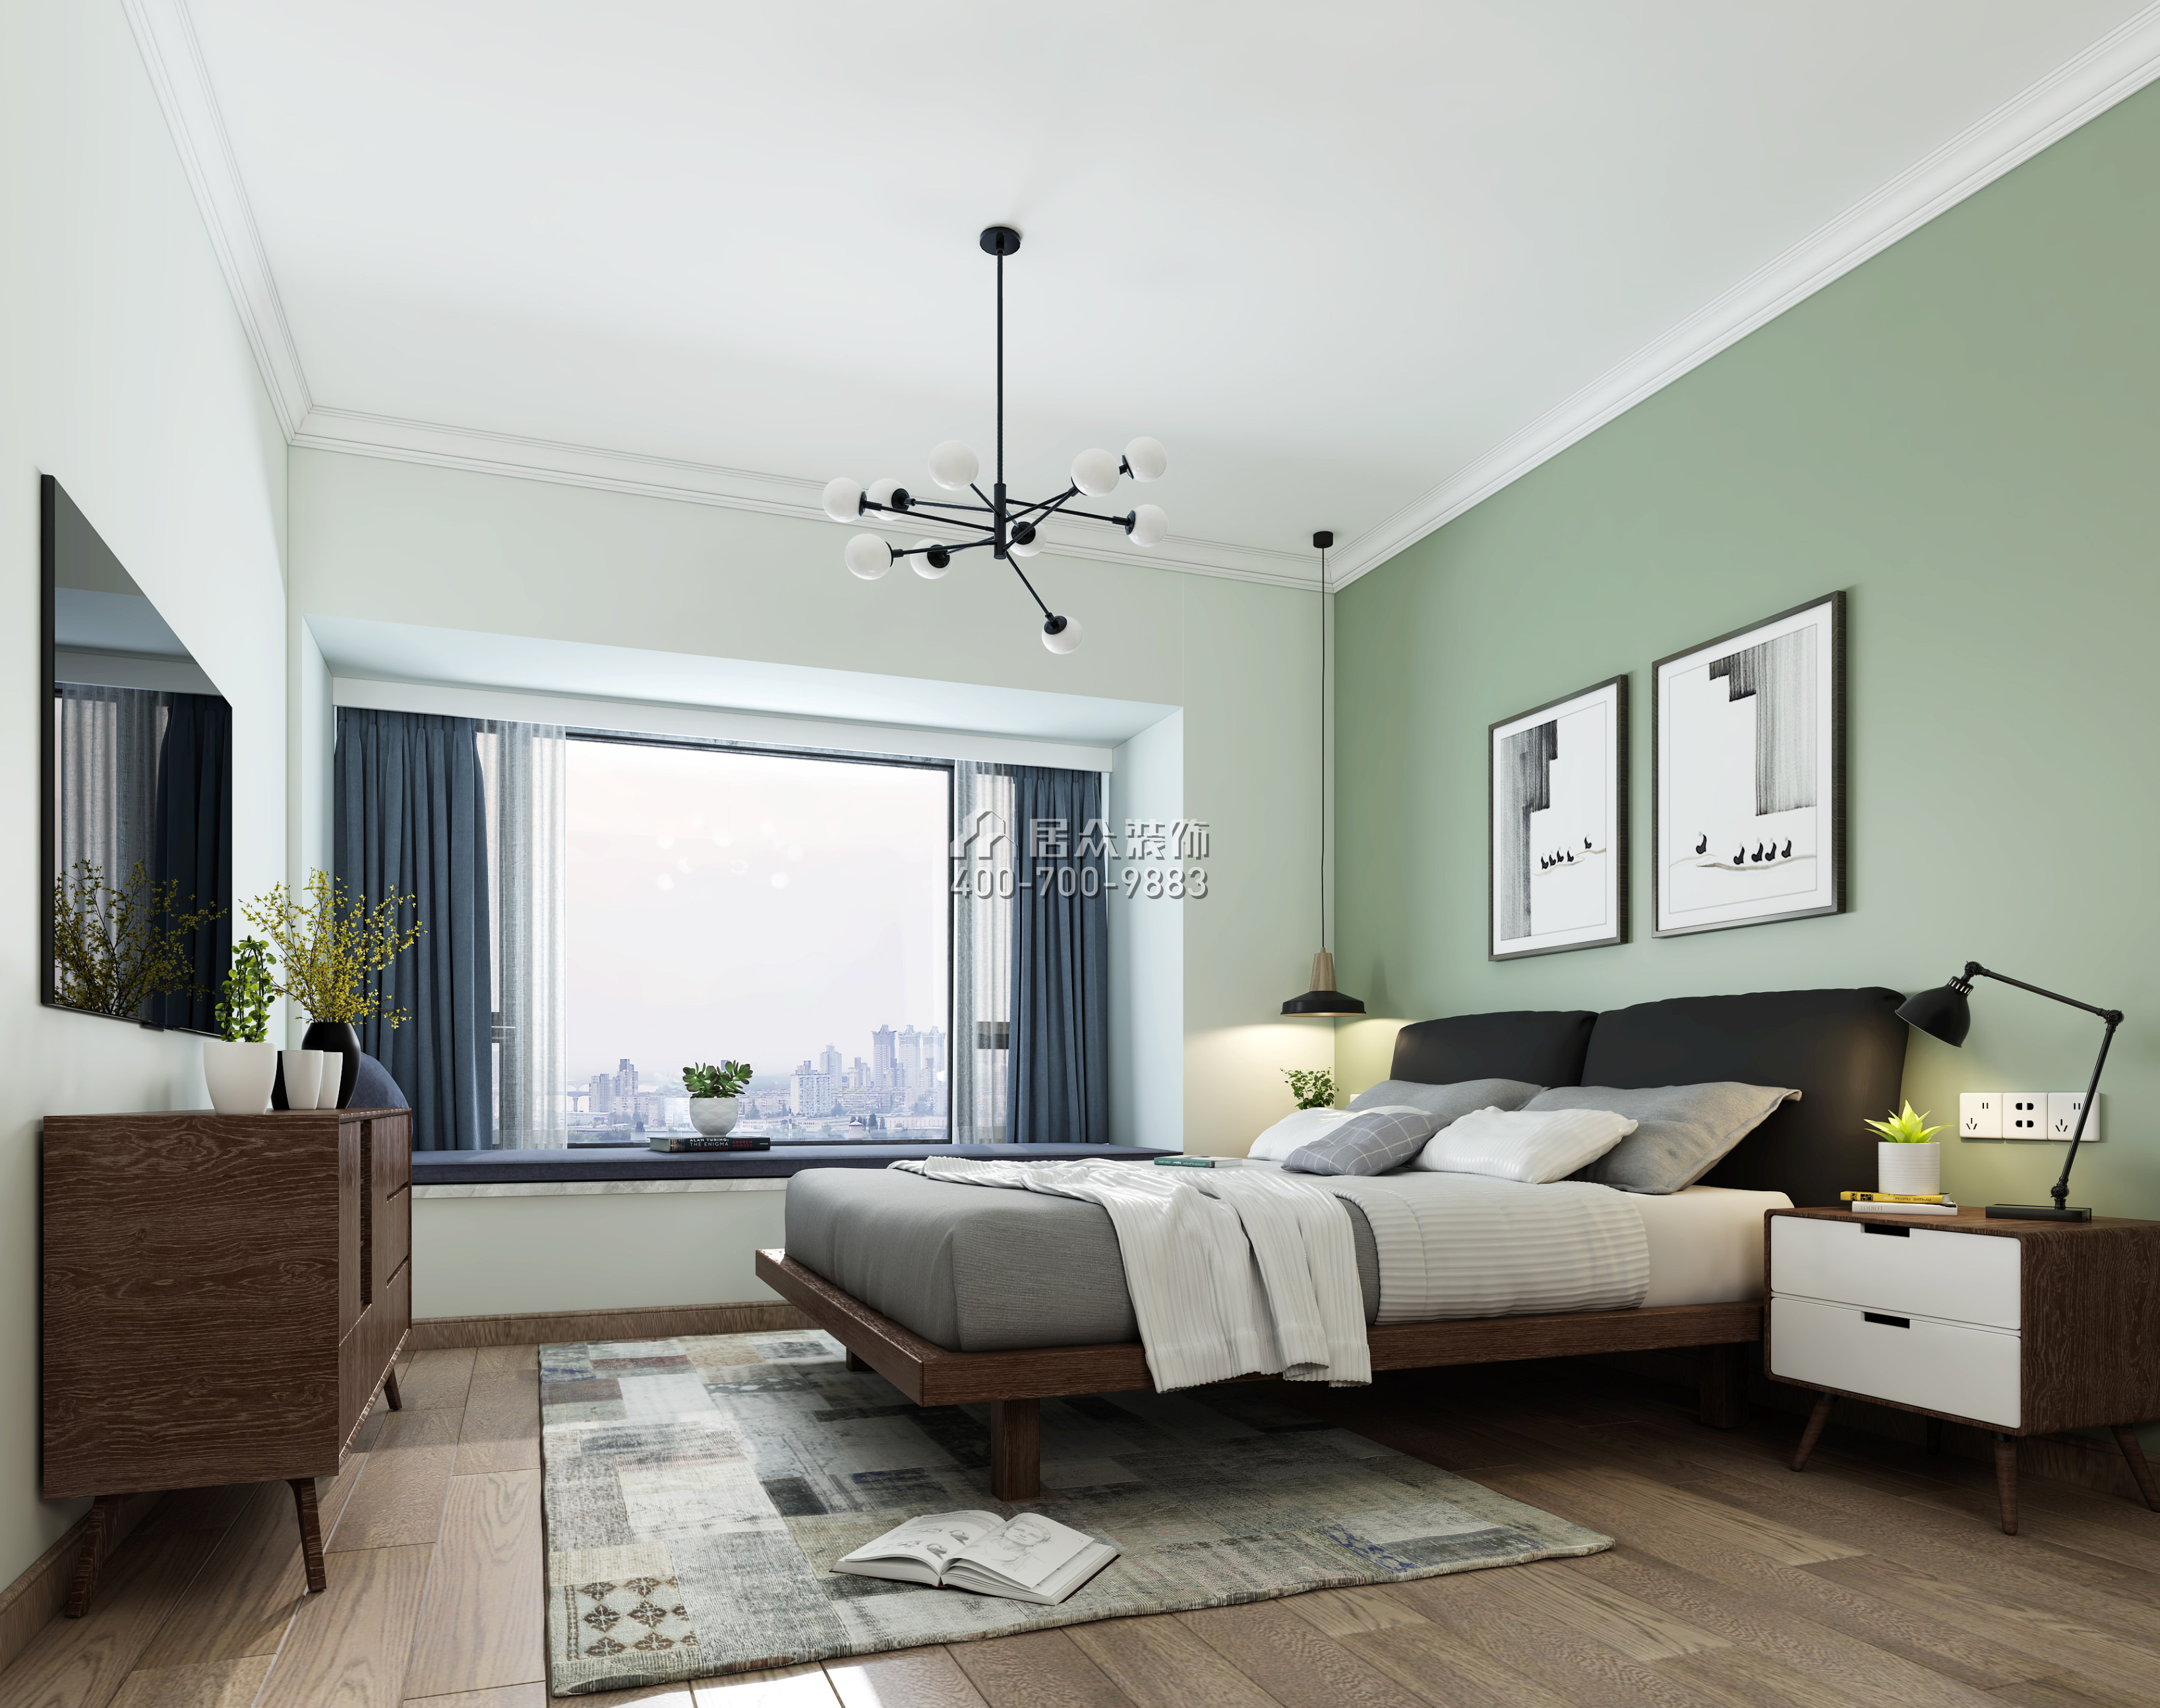 凤凰兰亭三期120平方米现代简约风格平层户型卧室装修效果图